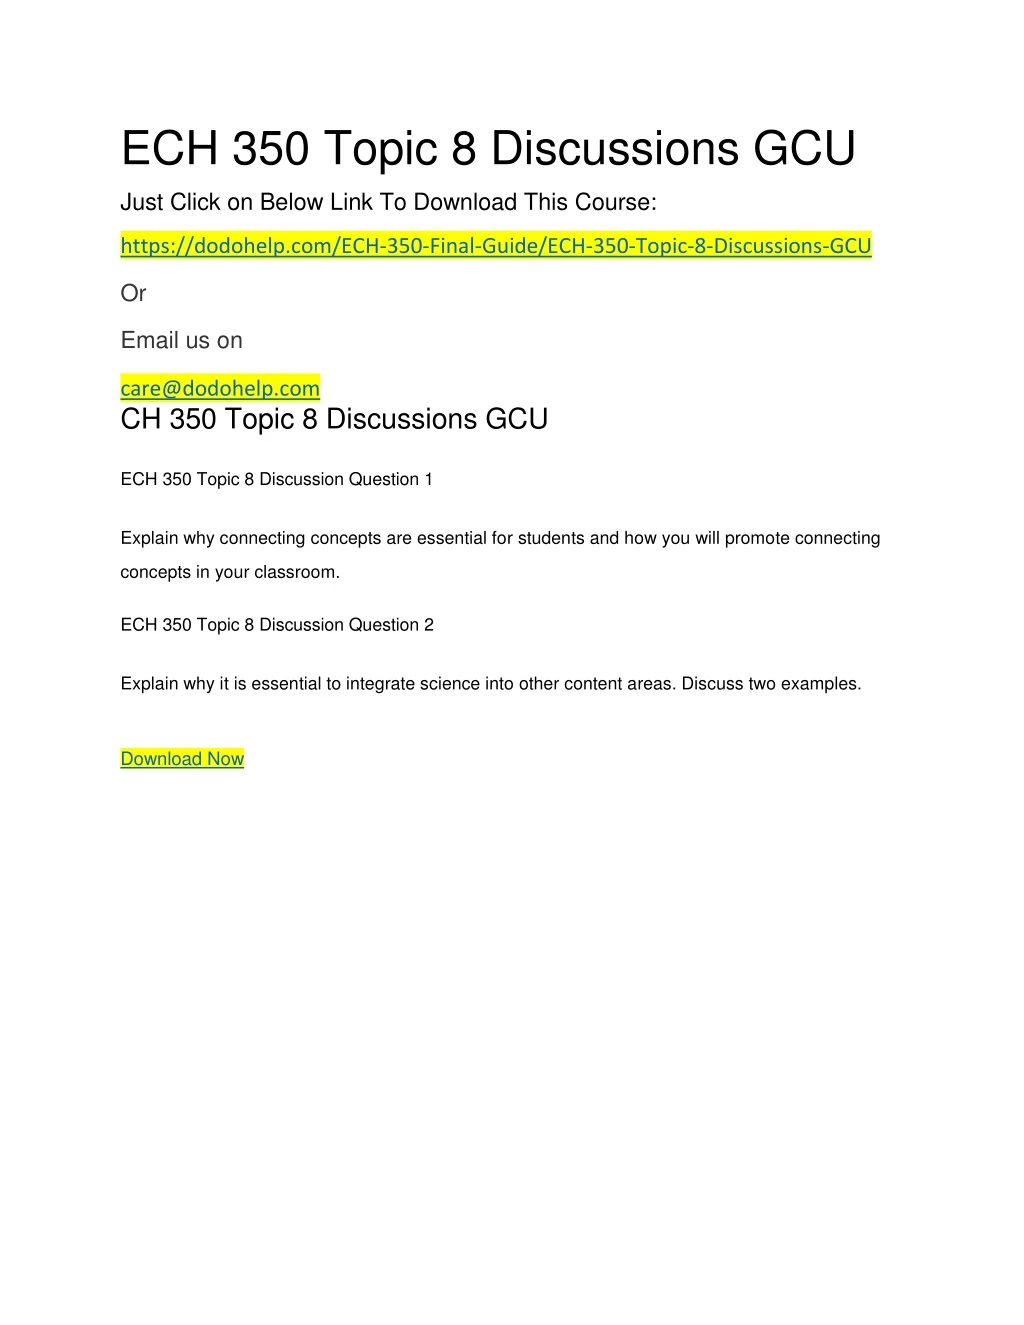 ech 350 topic 8 discussions gcu